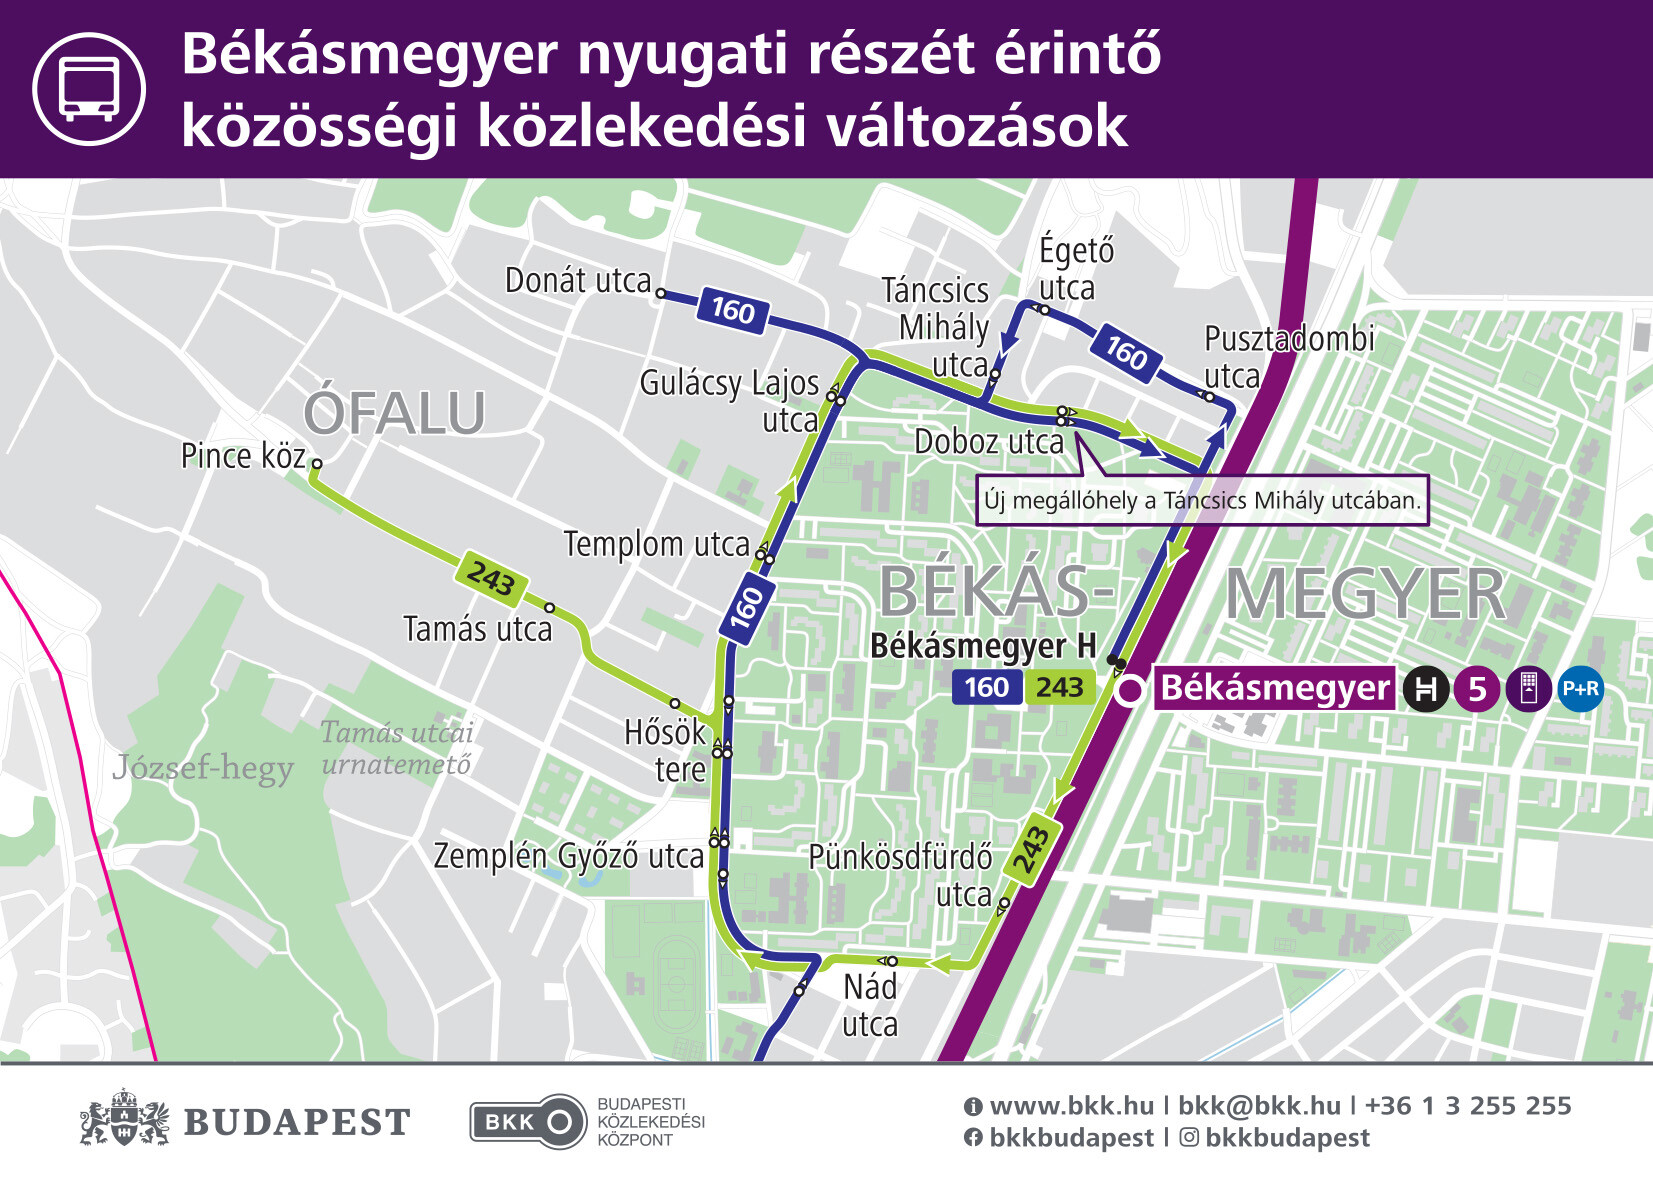 A B-verzió térképe: a Donát utca megállót a 160-as autóbusszal lehet elérni